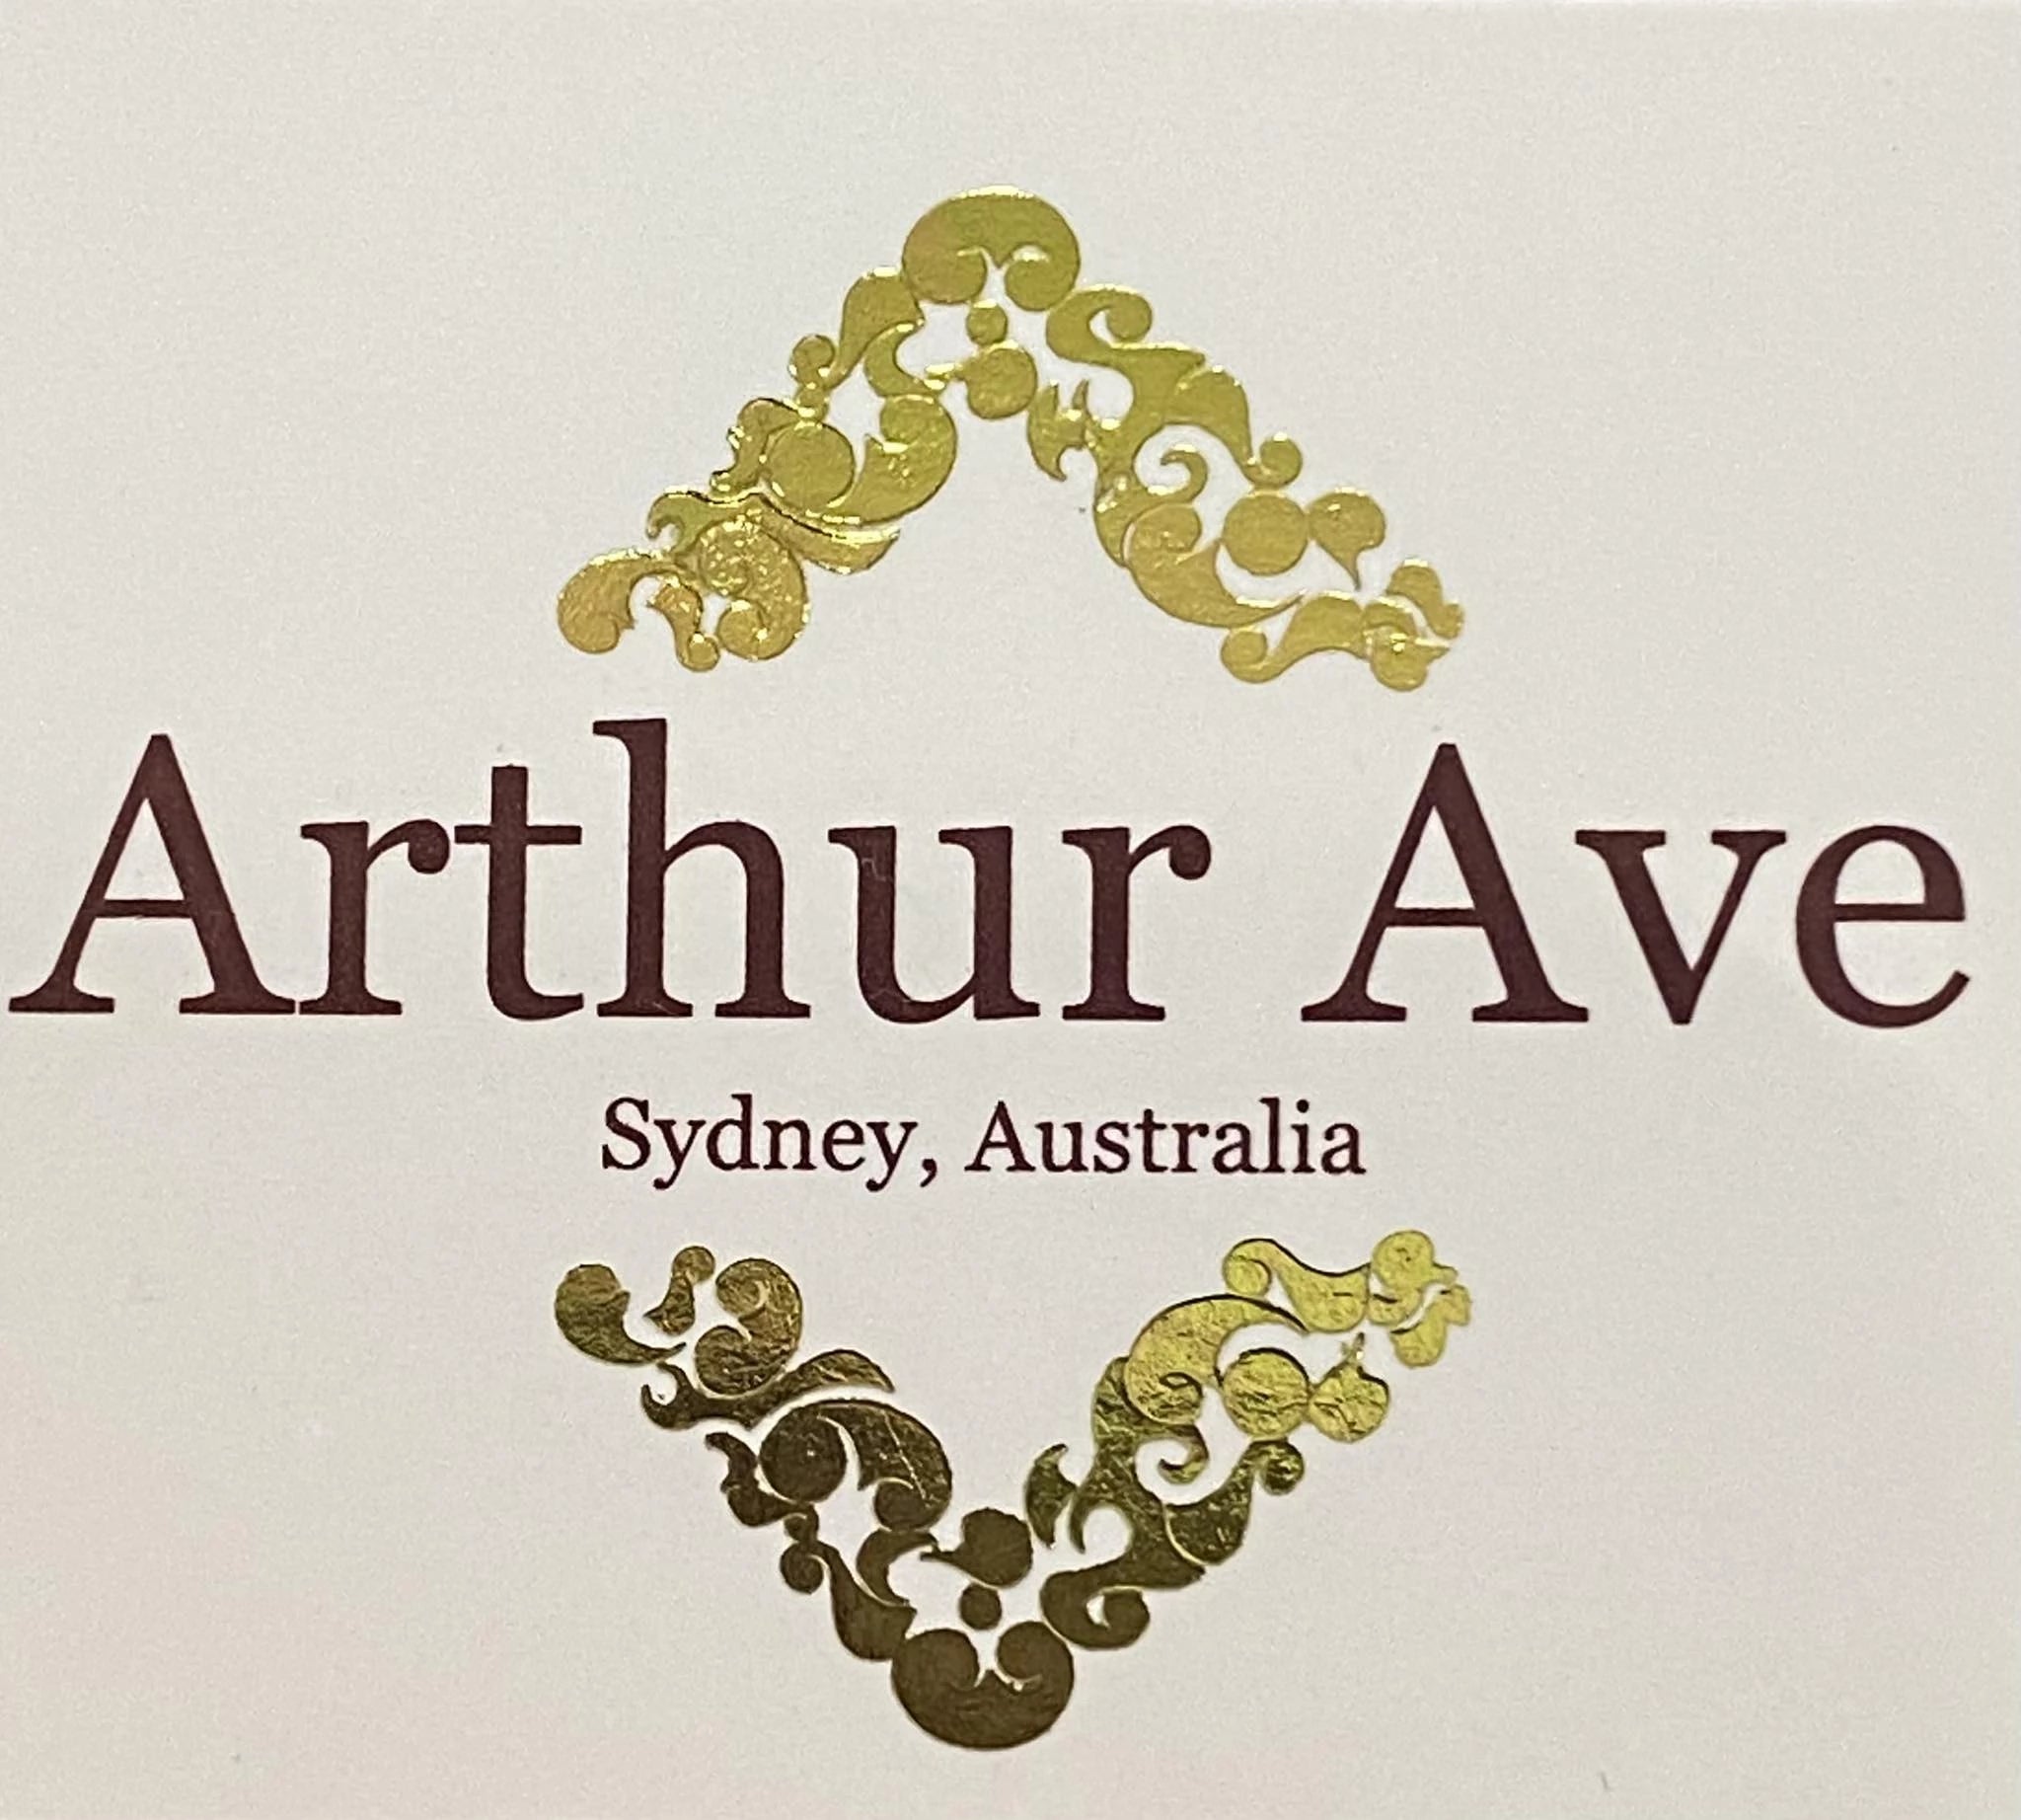 Arthur Ave